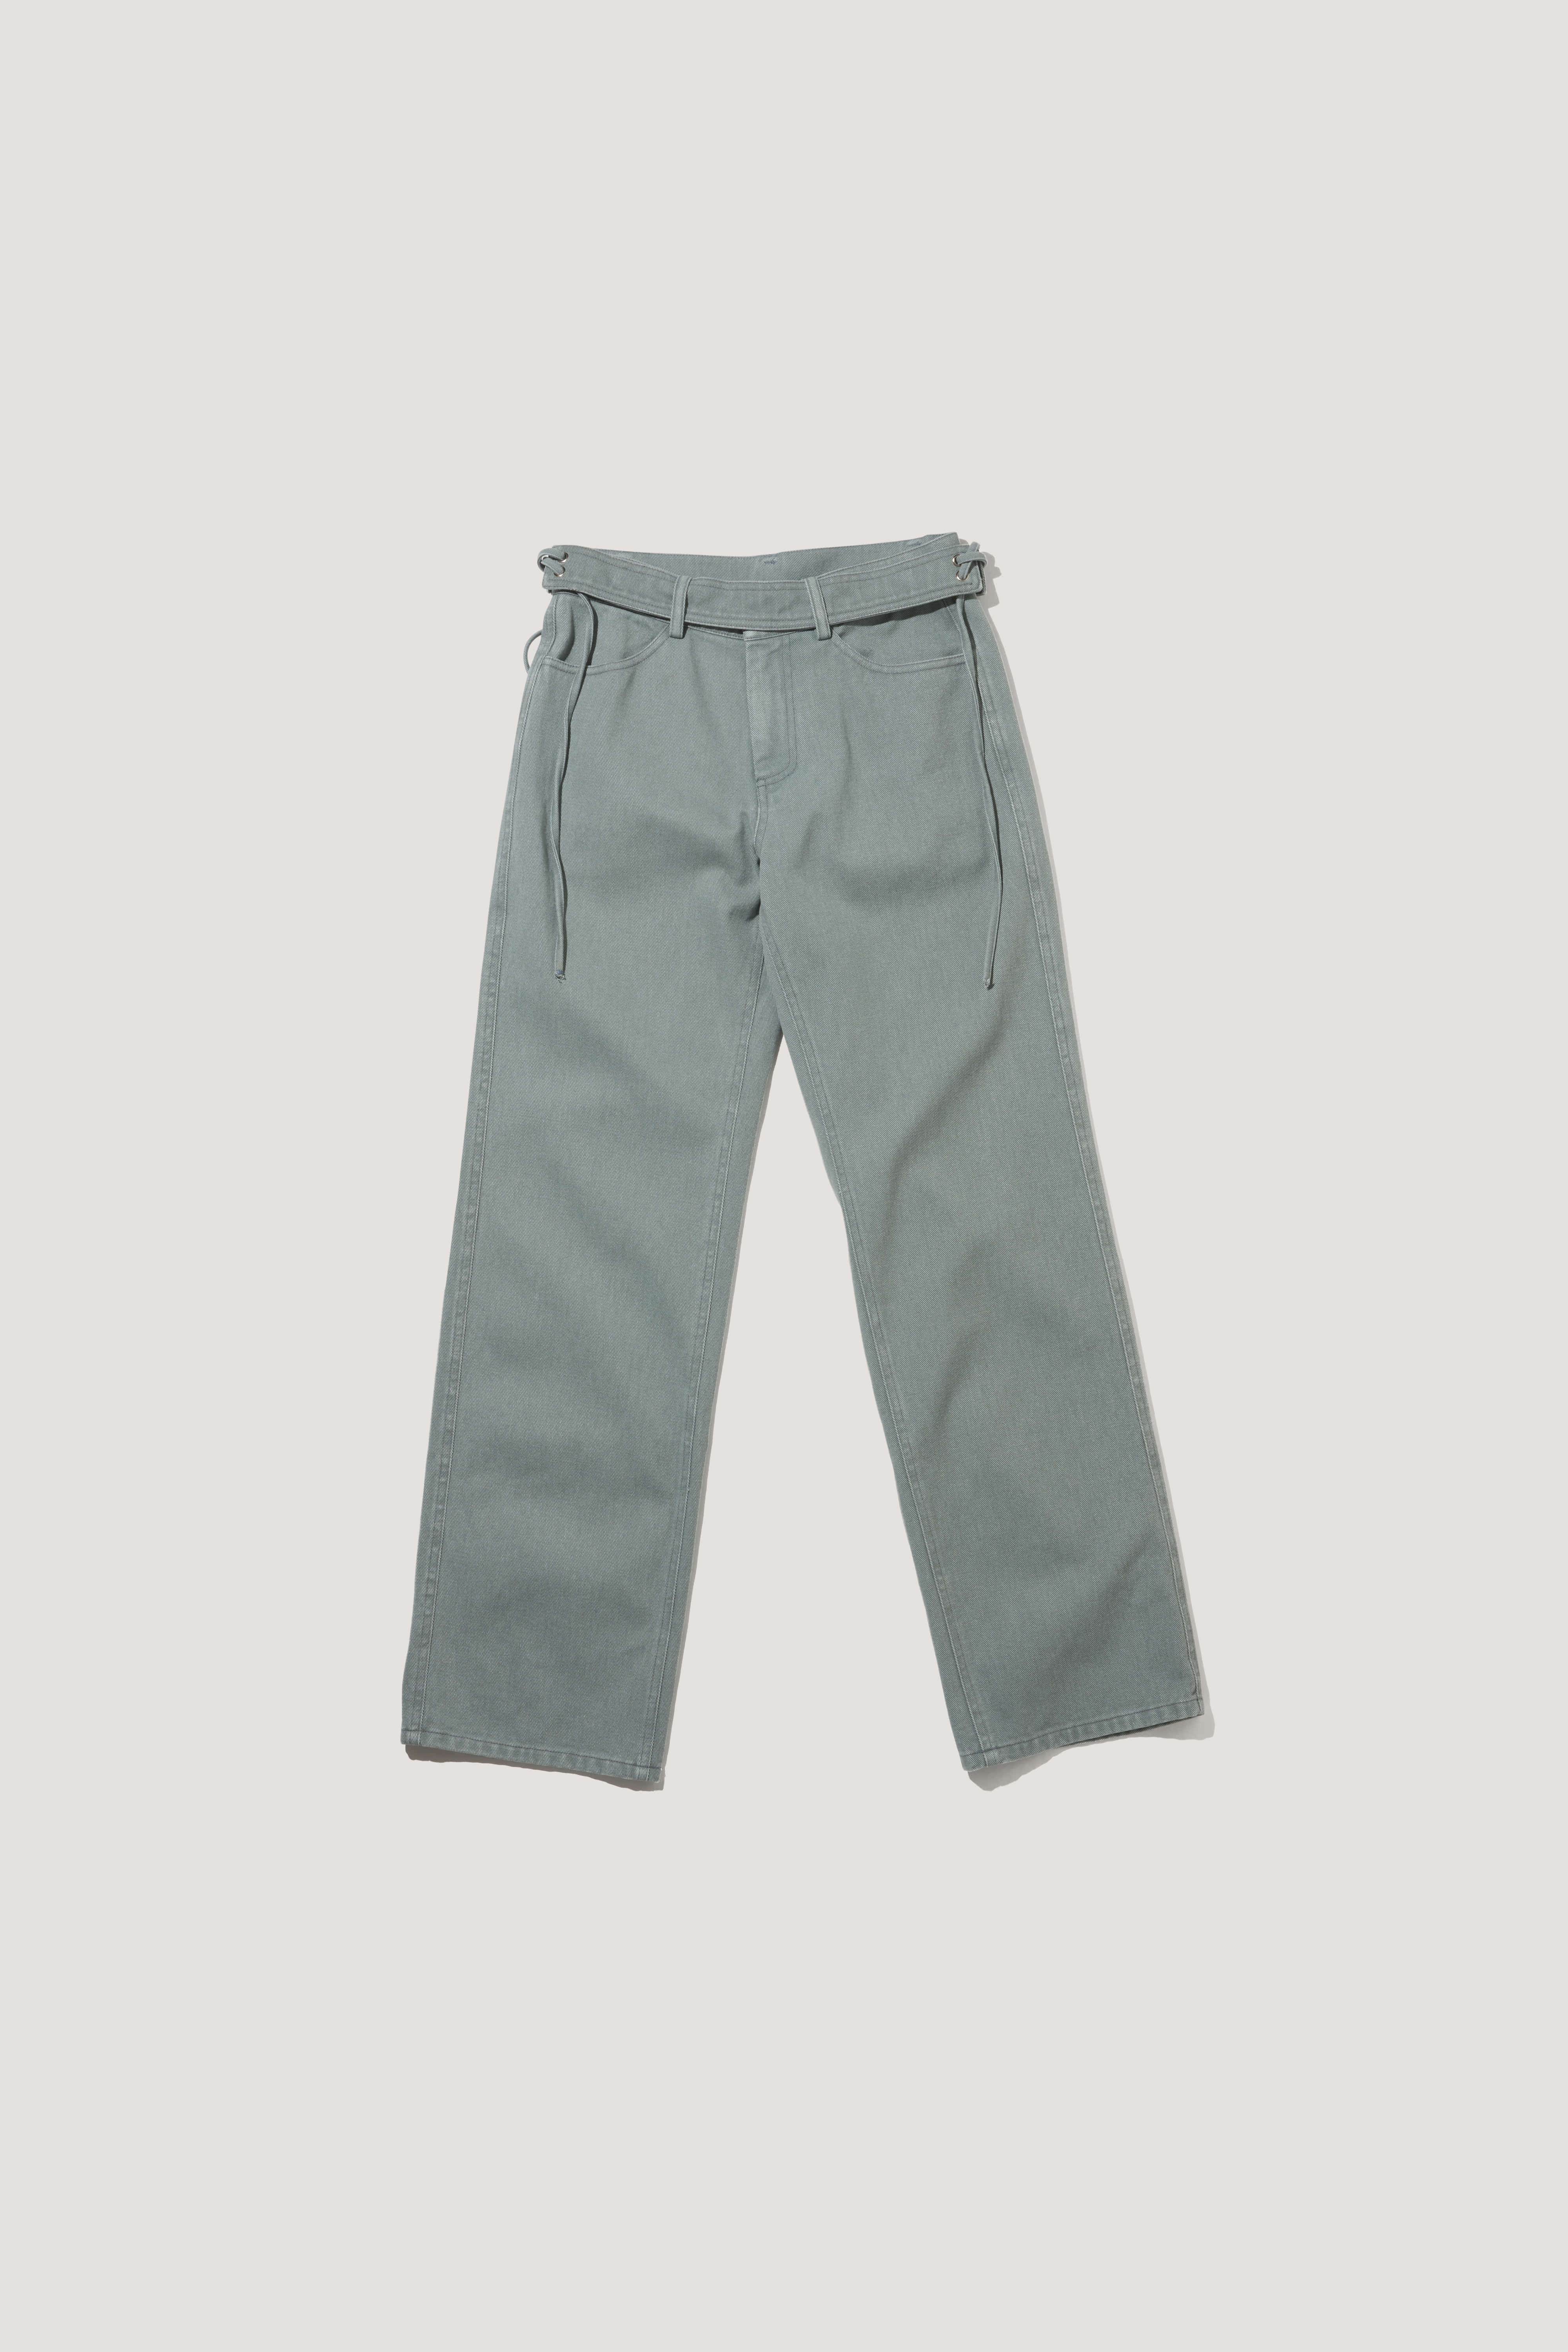 Western Belt Pants [dusty blue]